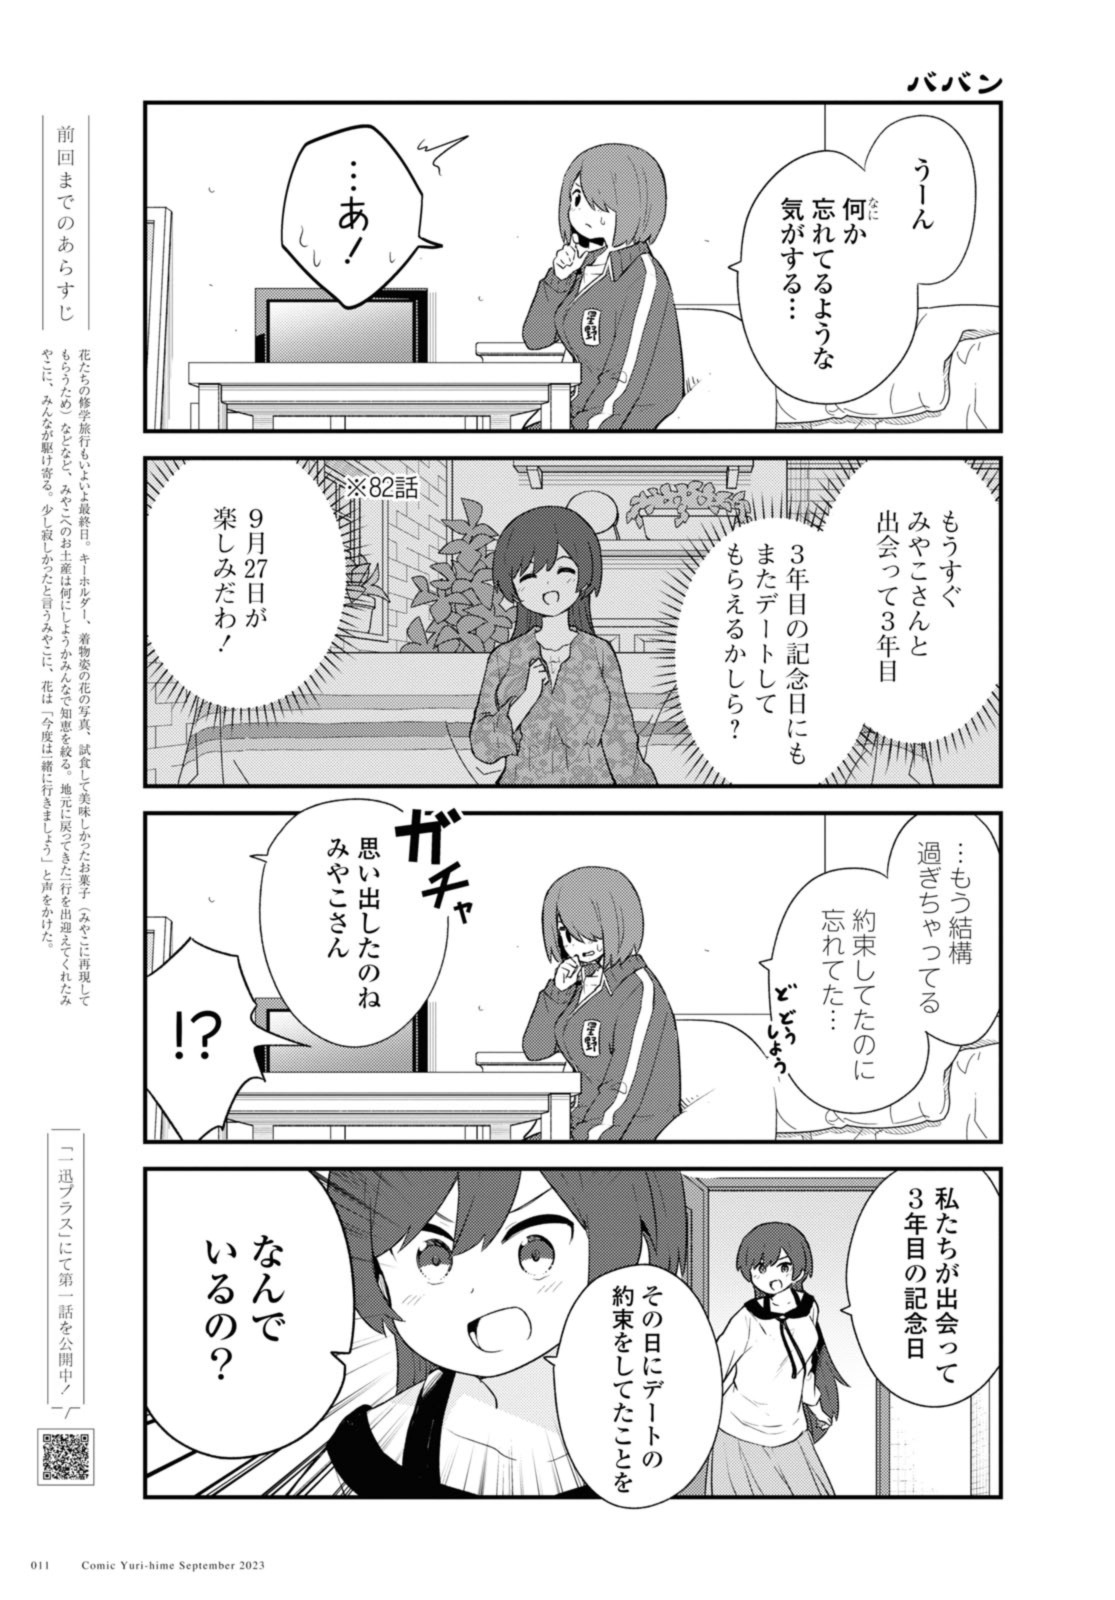 Watashi ni Tenshi ga Maiorita! - Chapter 108.1 - Page 5